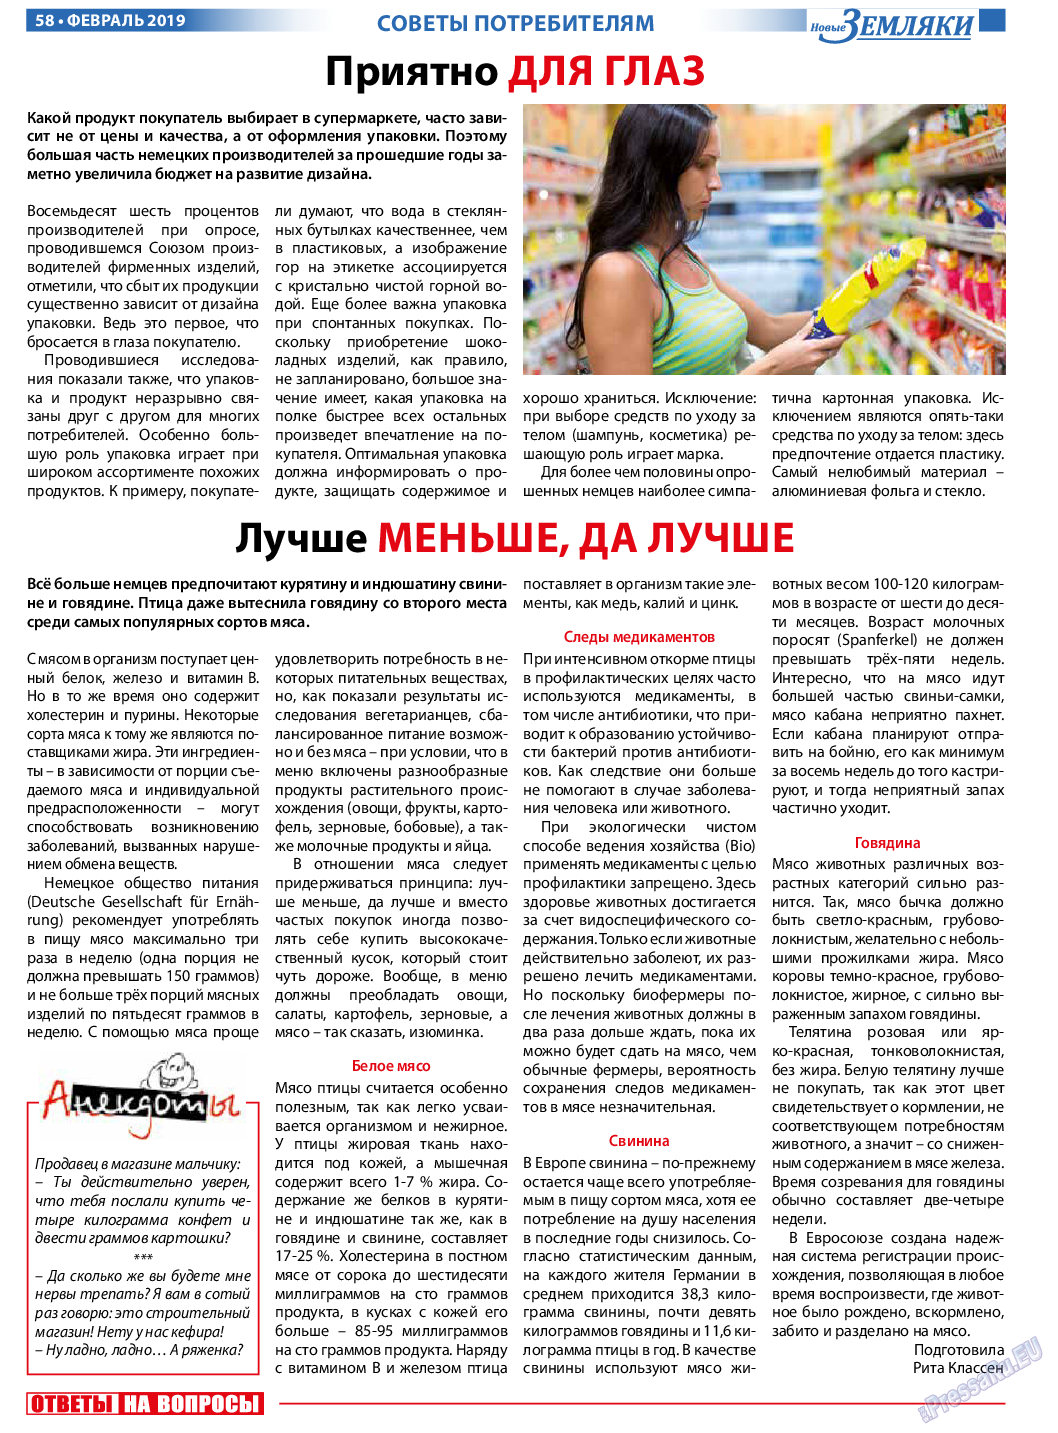 Новые Земляки, газета. 2019 №2 стр.58